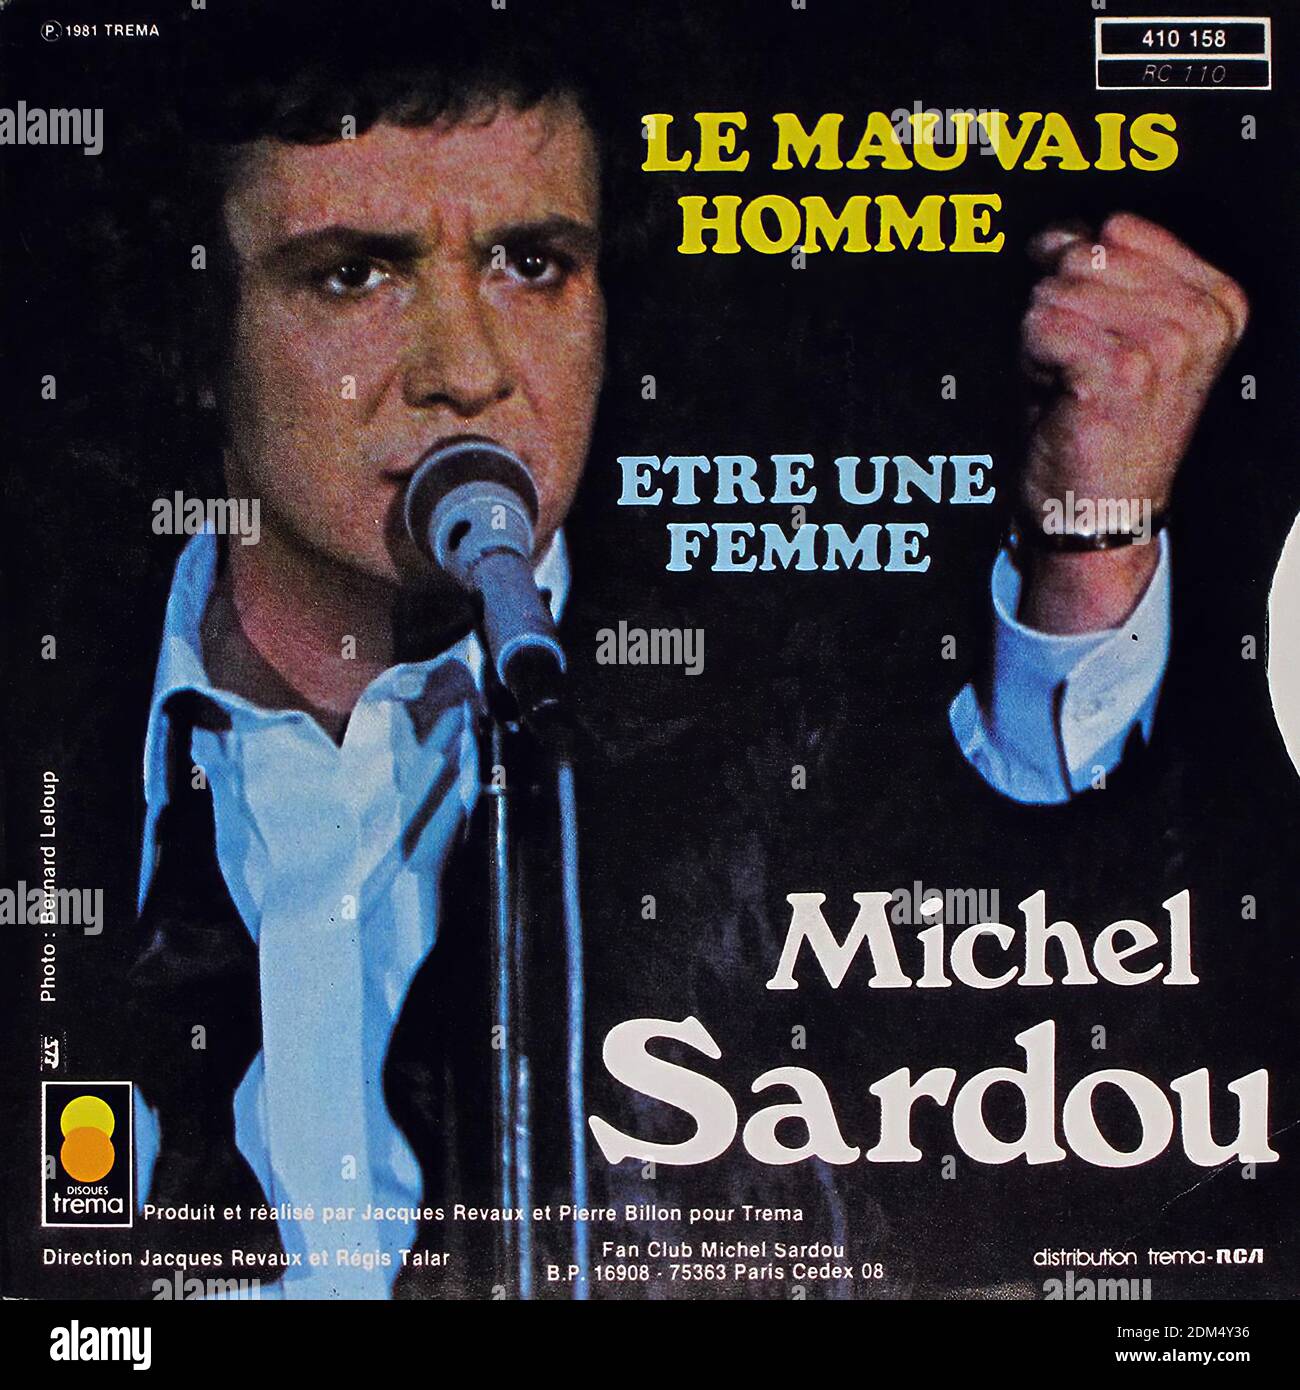 MICHEL SARDOU LE MAUVAIS HOMME ETRE UNE FEMME 7 PS Single - Vintage Vinyl  Record Cover Stock Photo - Alamy